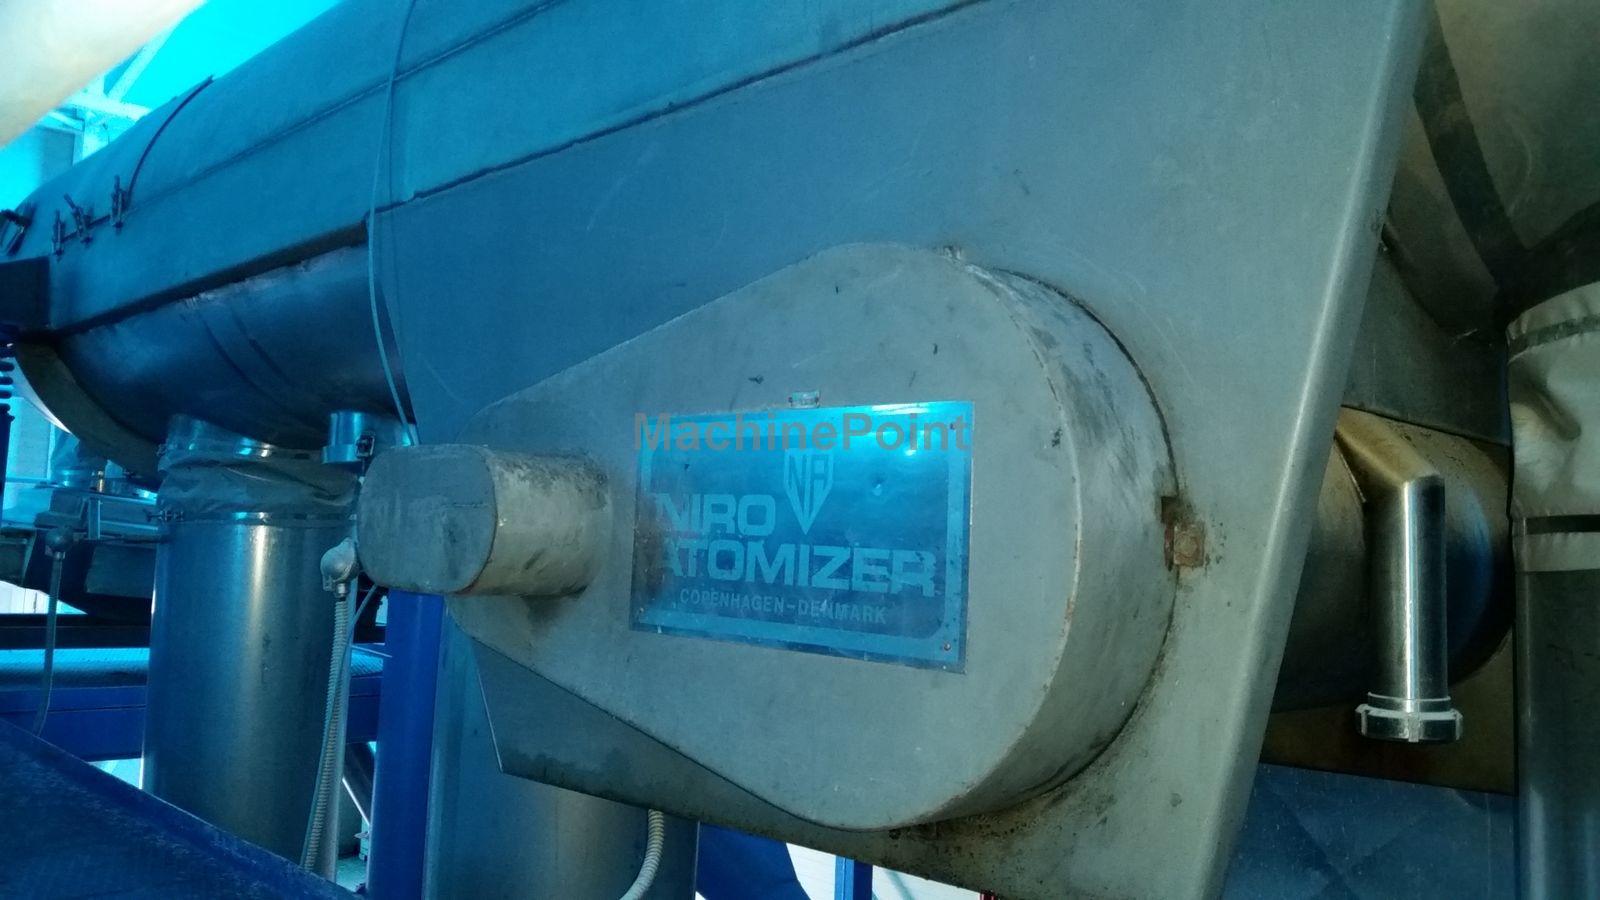 GEA - Niro Atomizer - Maszyna używana